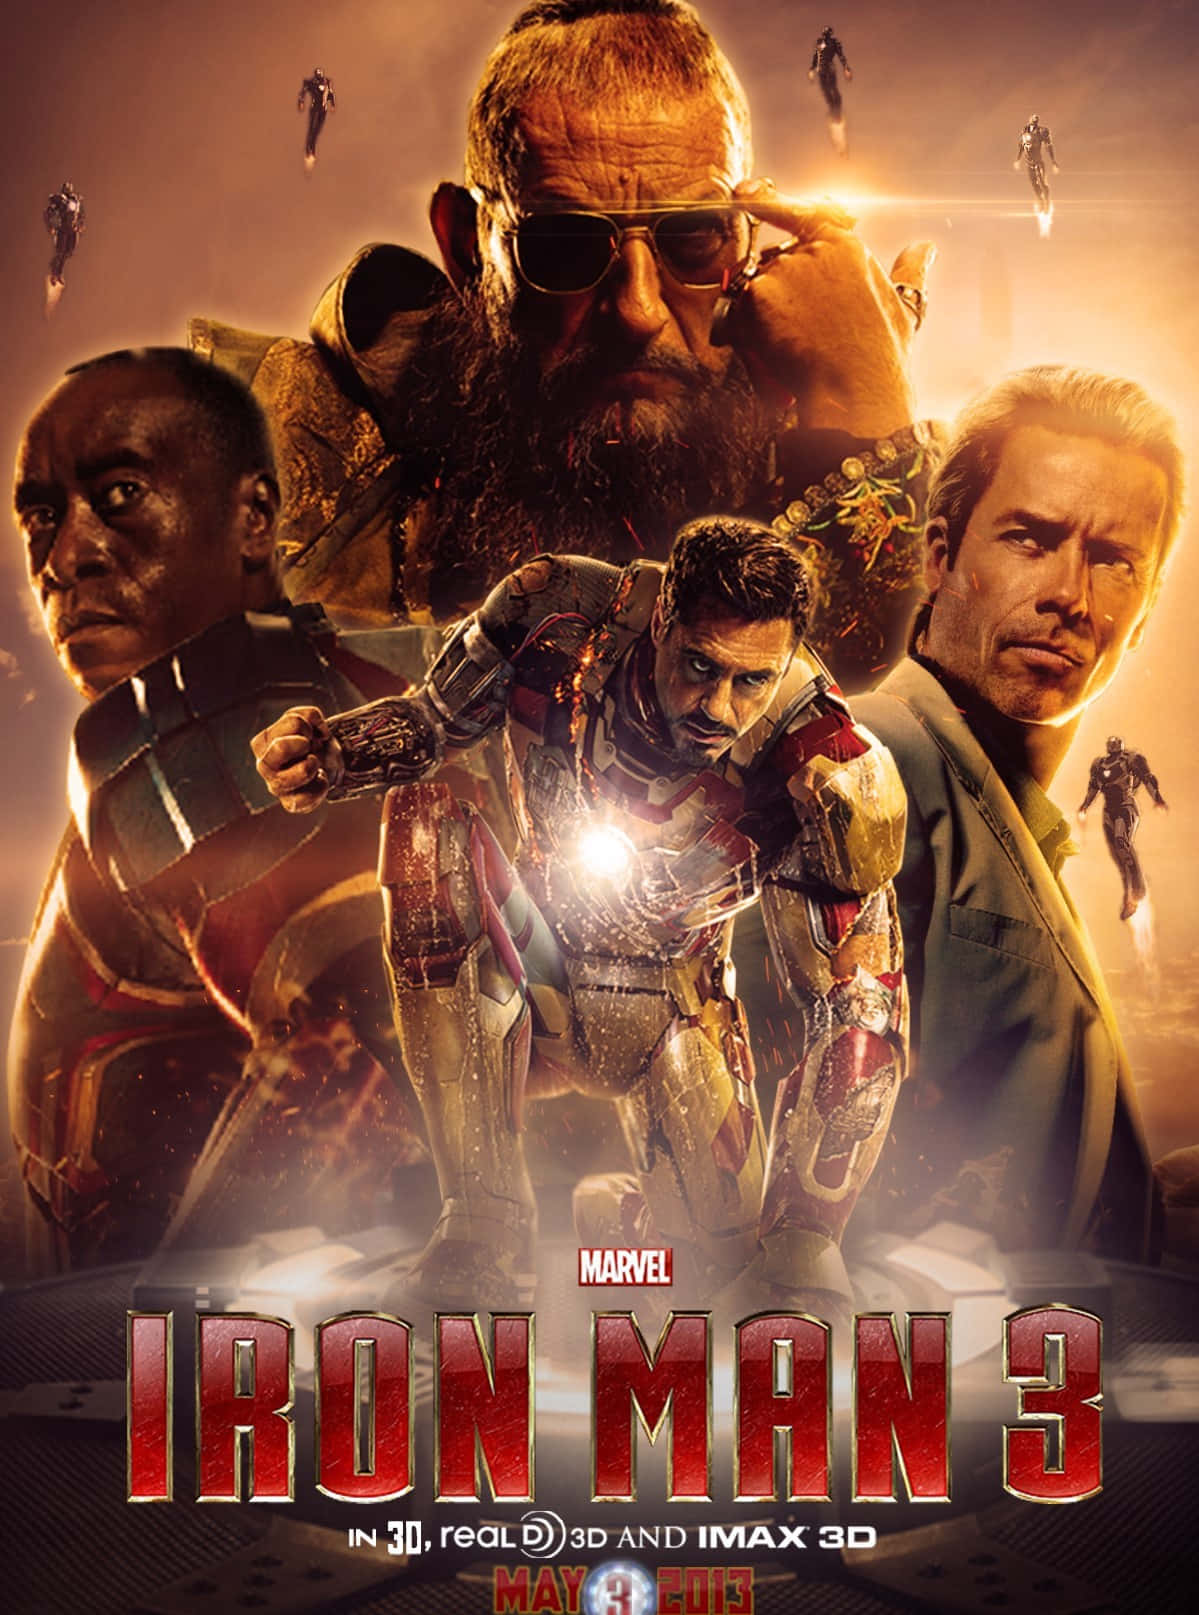 "Iron Man Meets His Match" Wallpaper